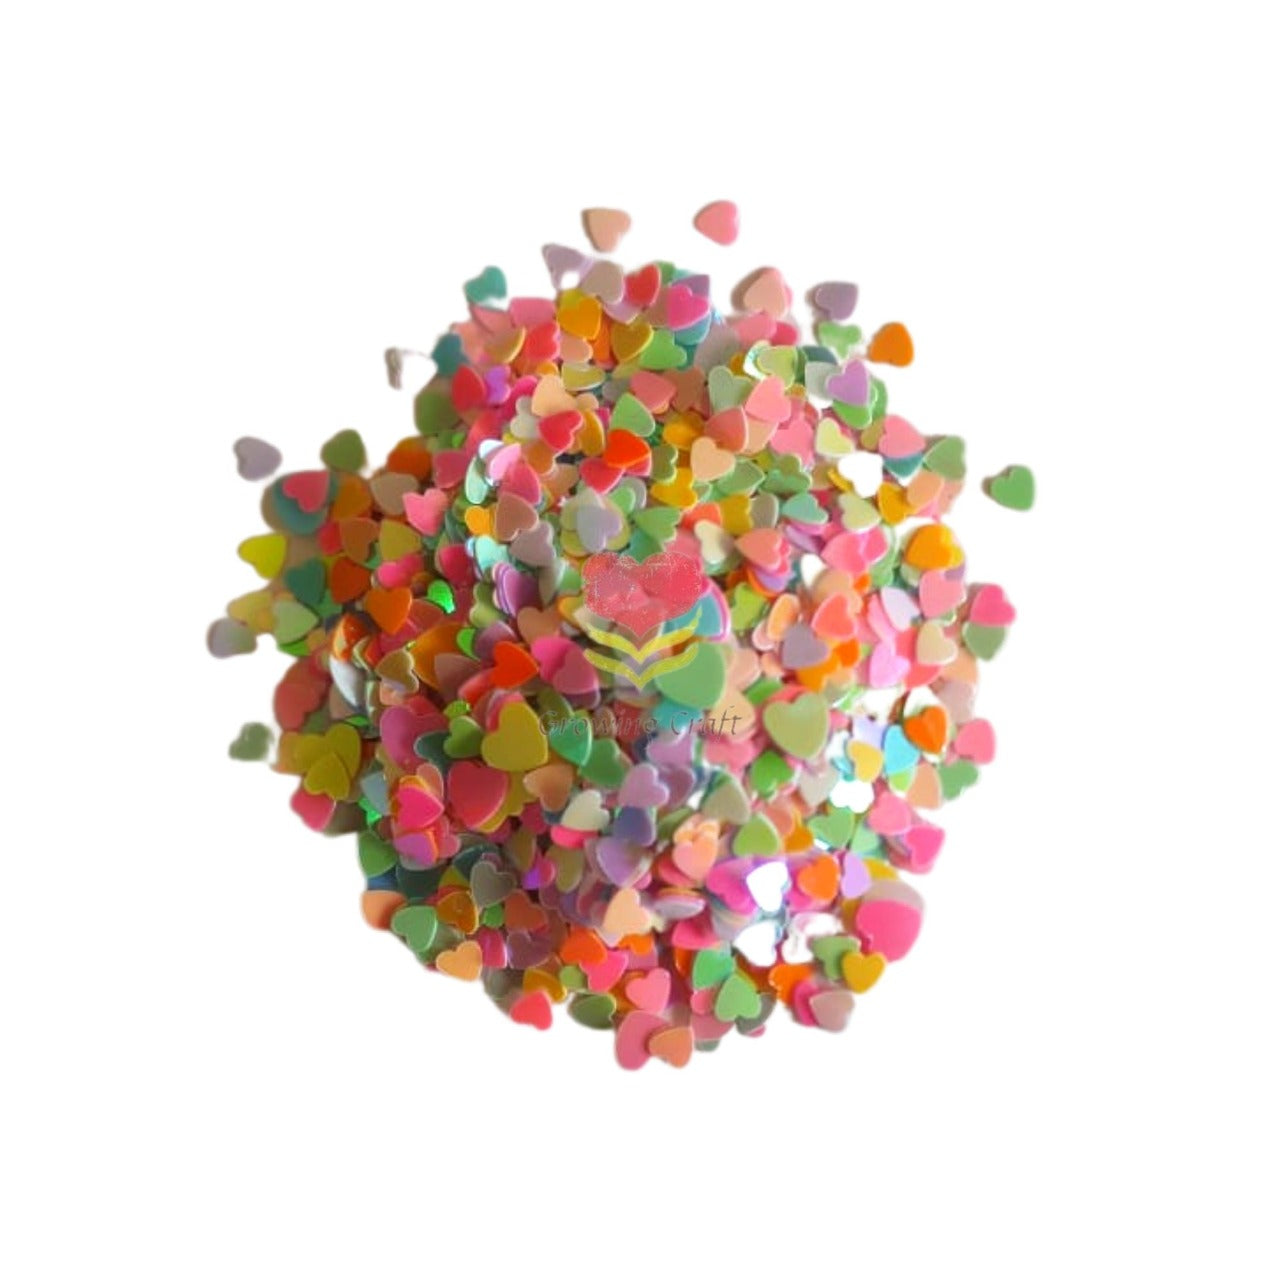 Colourful Heart Filler  - GCSQ 403 - Growing Craft - Best craft Supplies